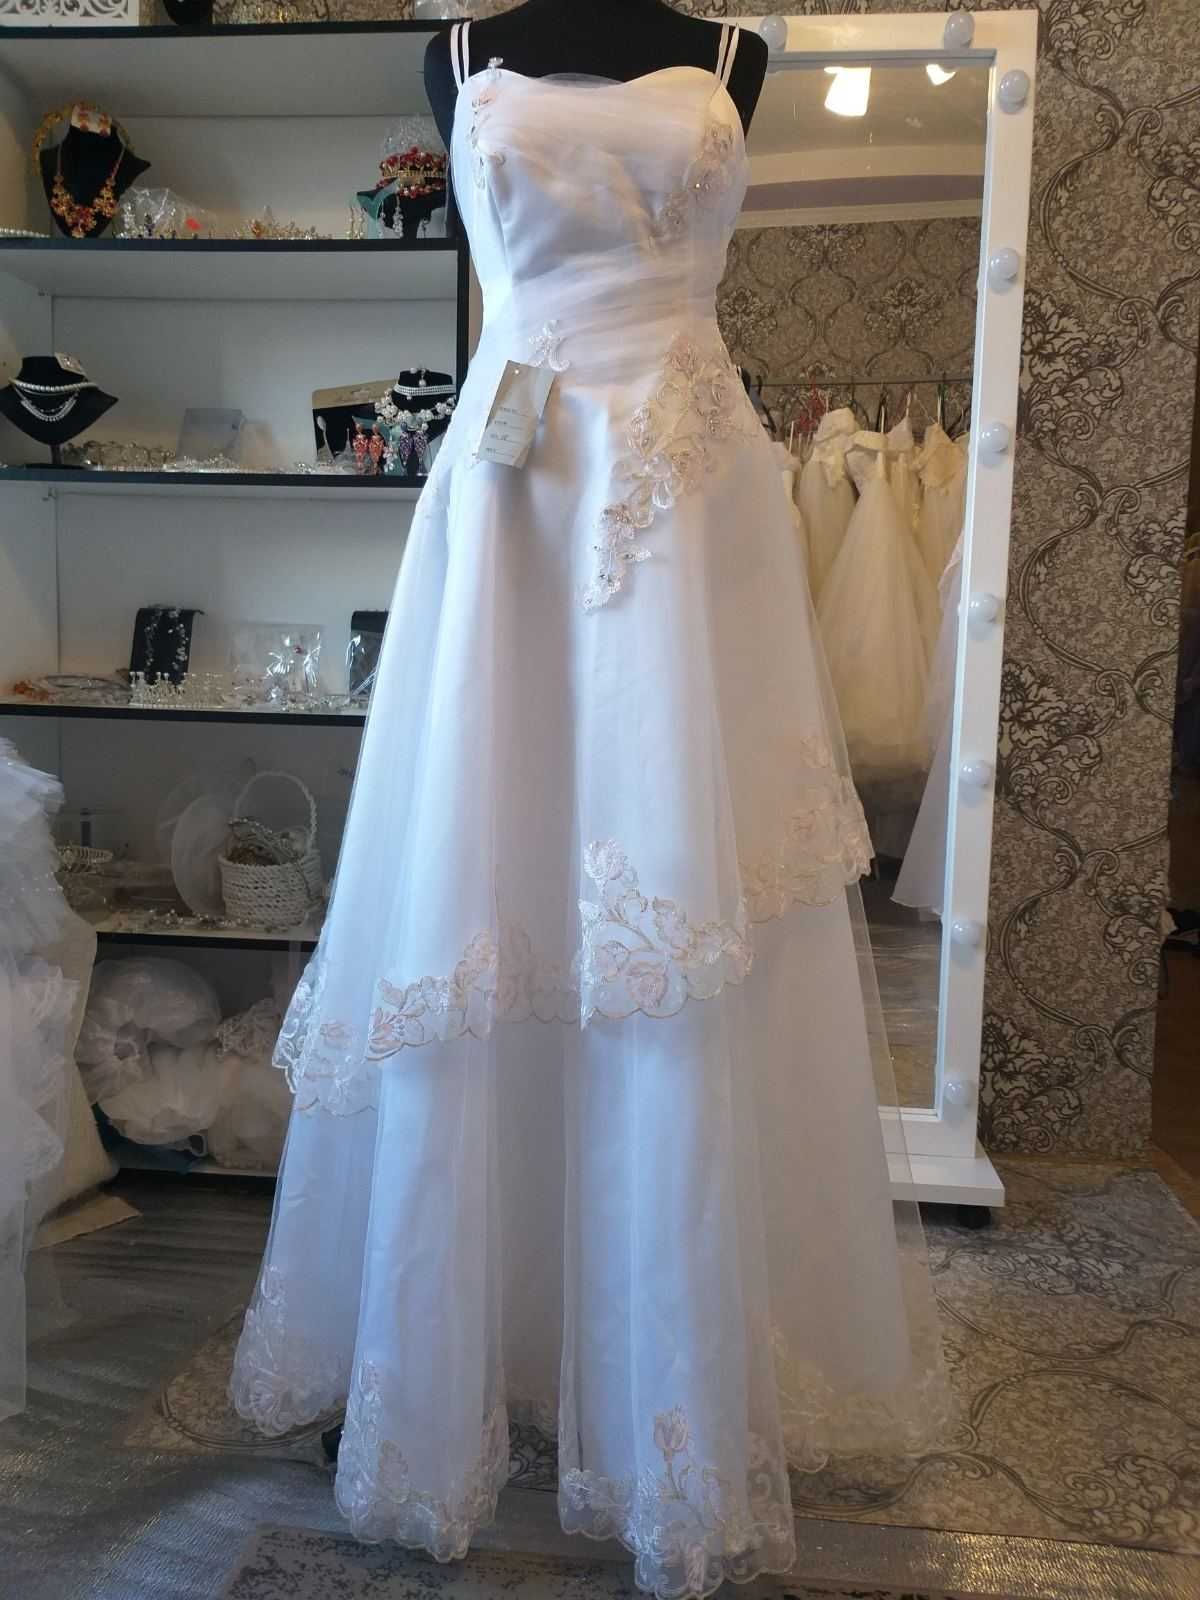 Новое Свадебное Платье в Одессе Авторская модель (Паутинка-прокат)